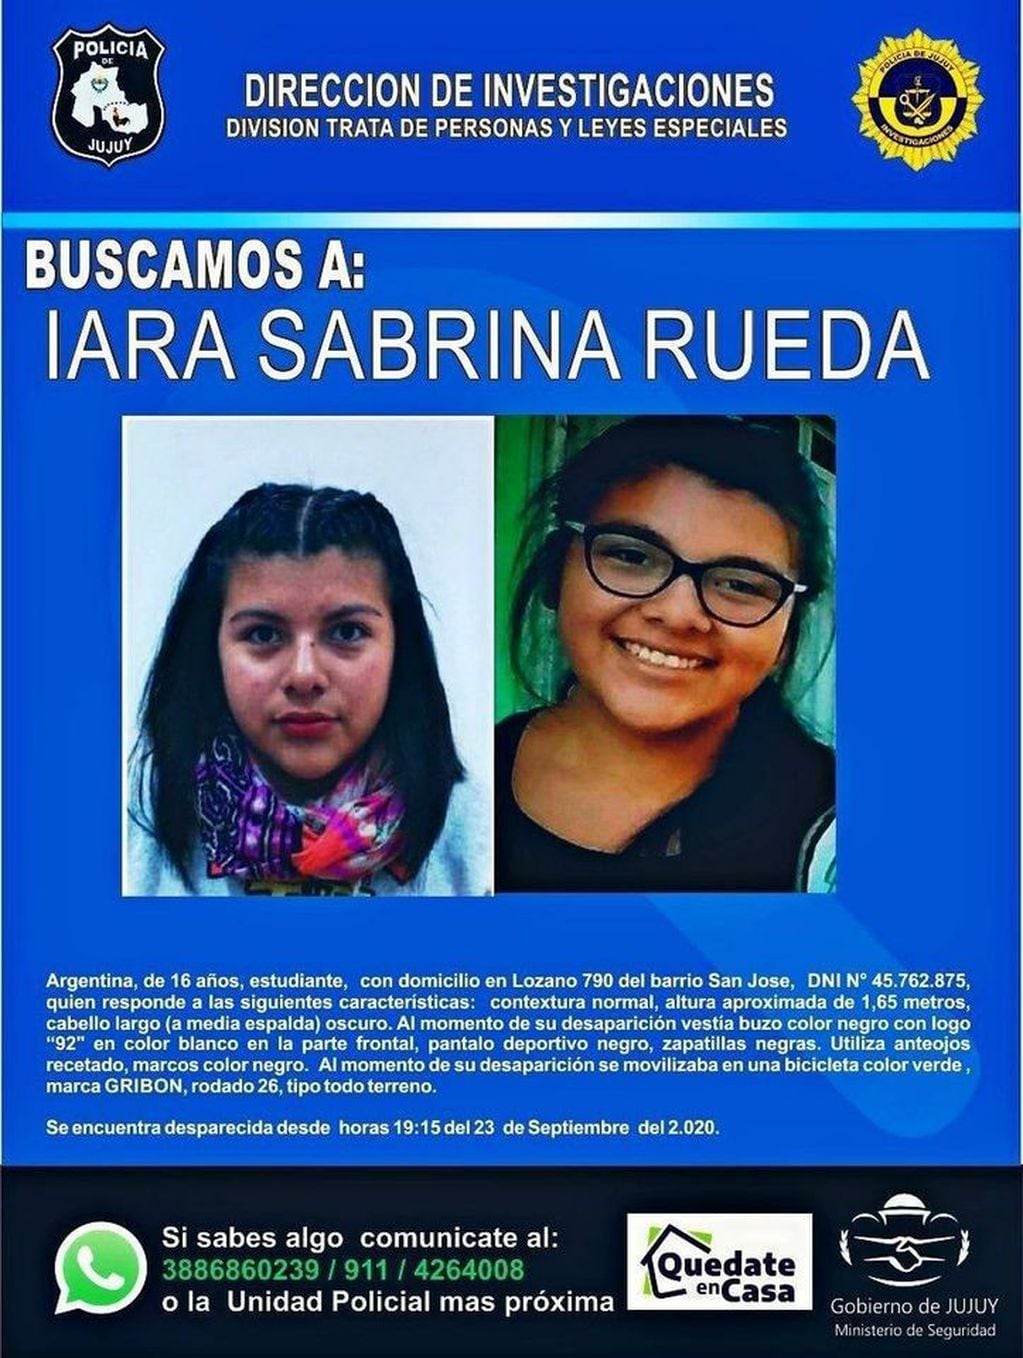 La búsqueda de Iara Sabrina Rueda comenzó el miércoles, después que salió de su casa, en Palpalá, y se perdió todo contacto con ella desde entonces.